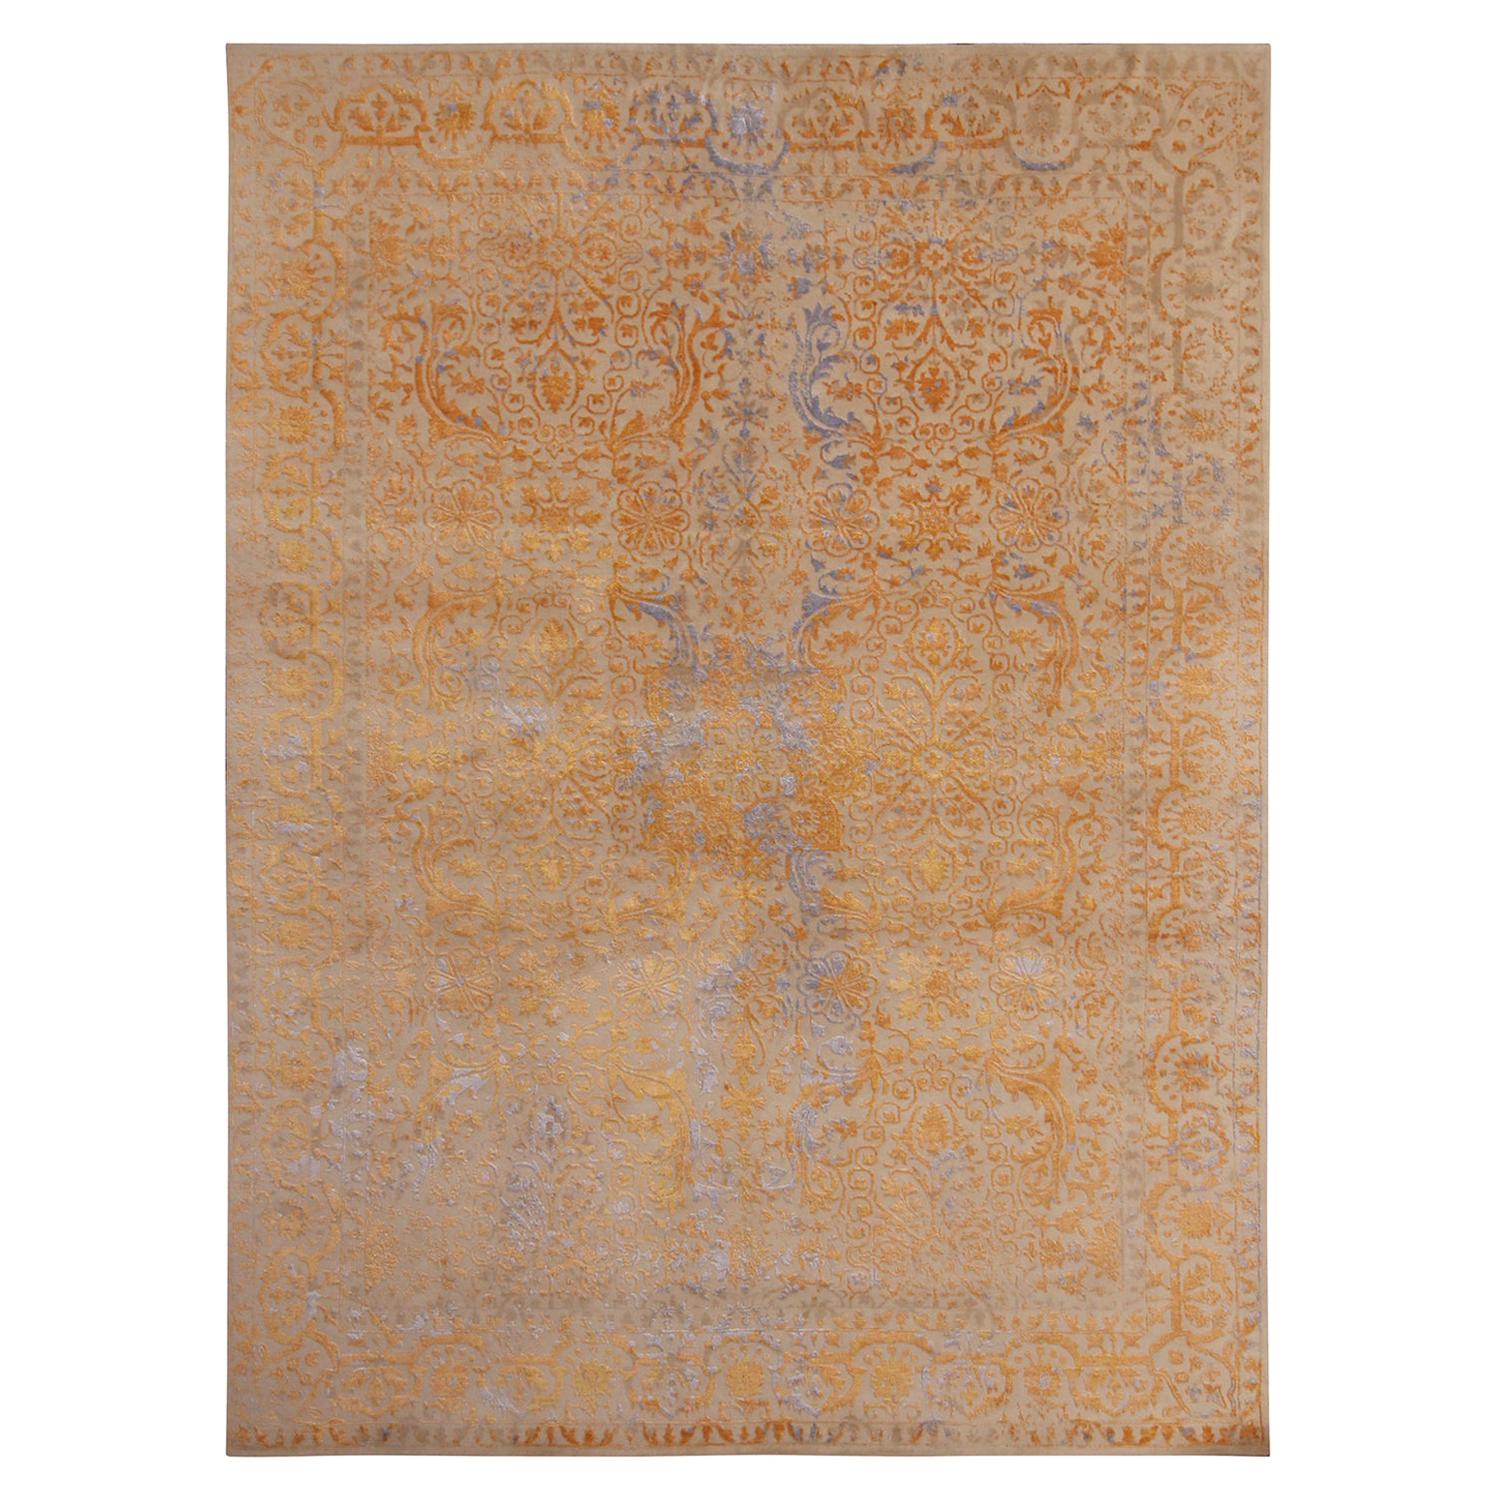 Tapis & Kilims - Tapis personnalisé en laine et soie à motifs floraux géométriques beige, or et bleu